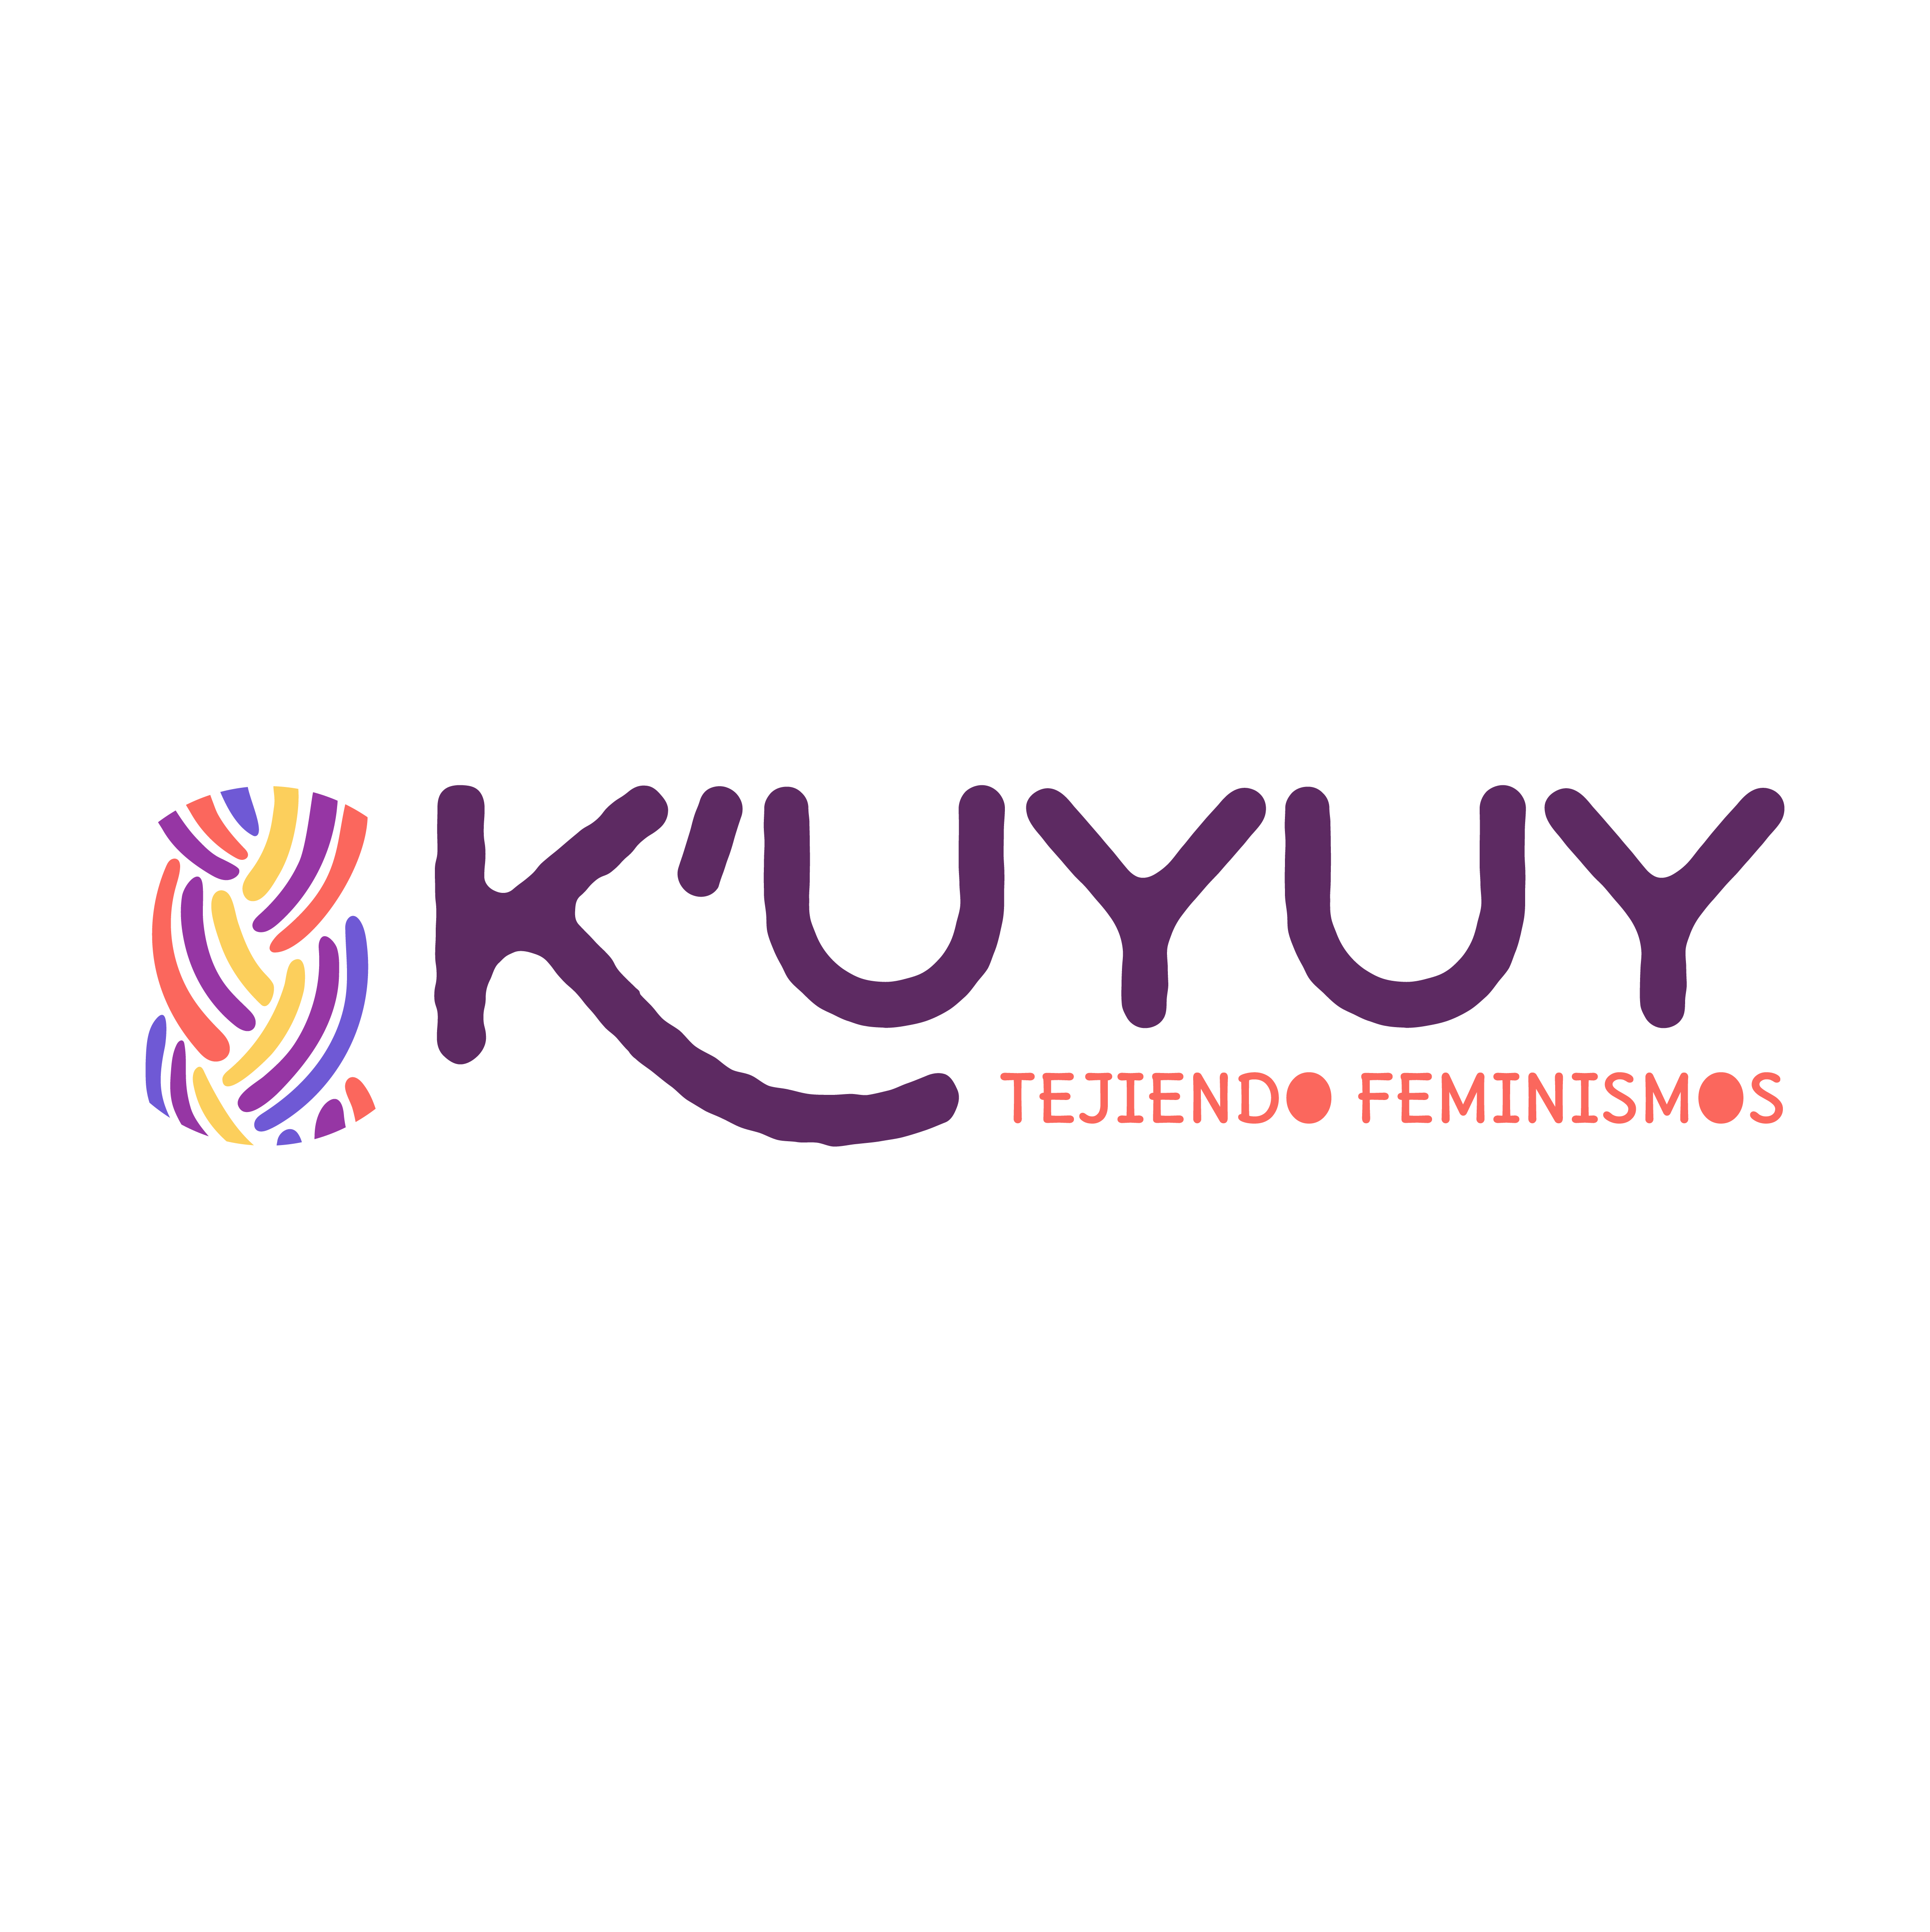 K' uyuy: Red transnacional de feministas antirracistas